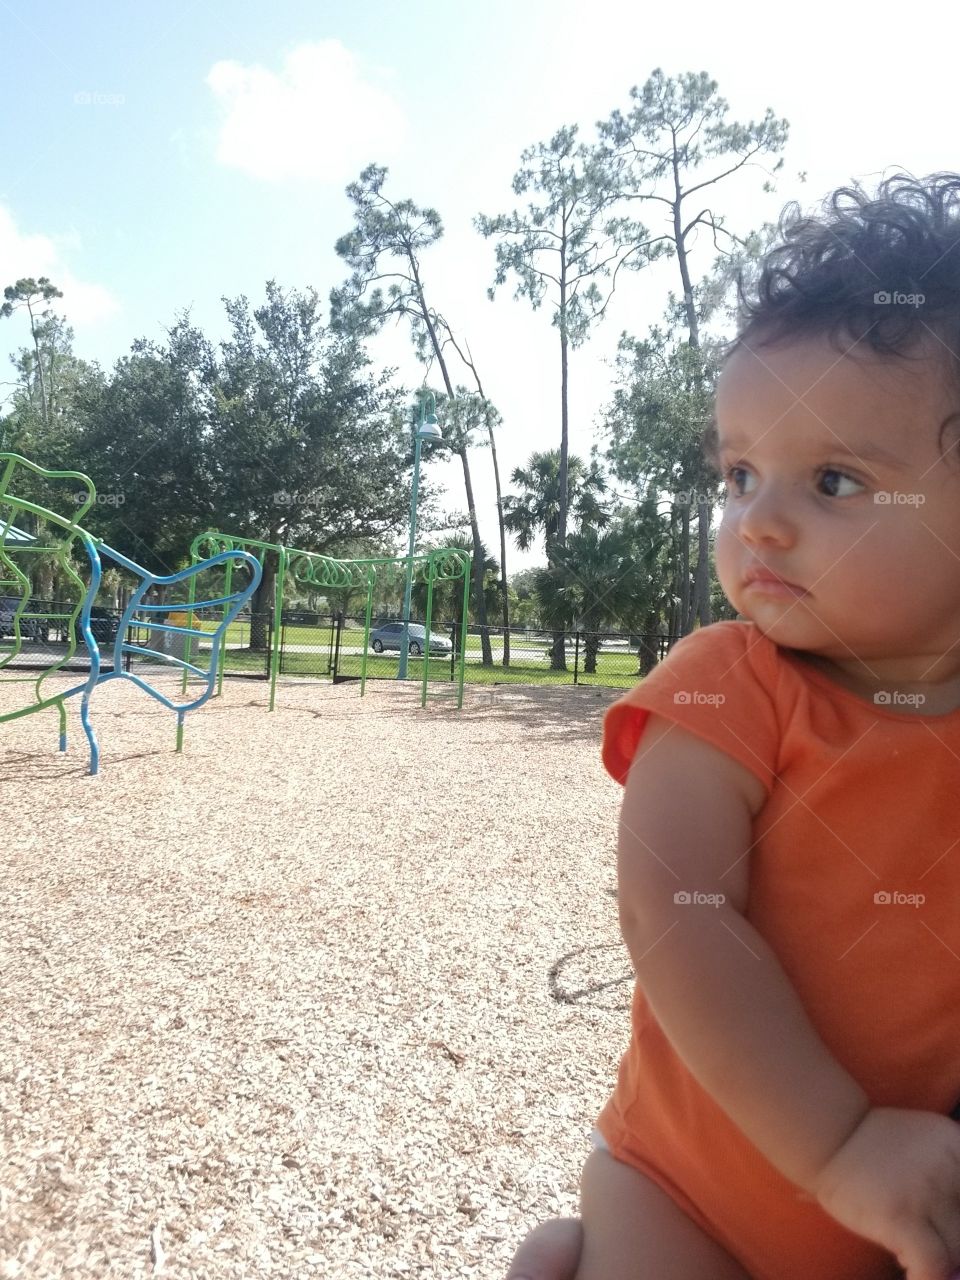 Baby at Playground